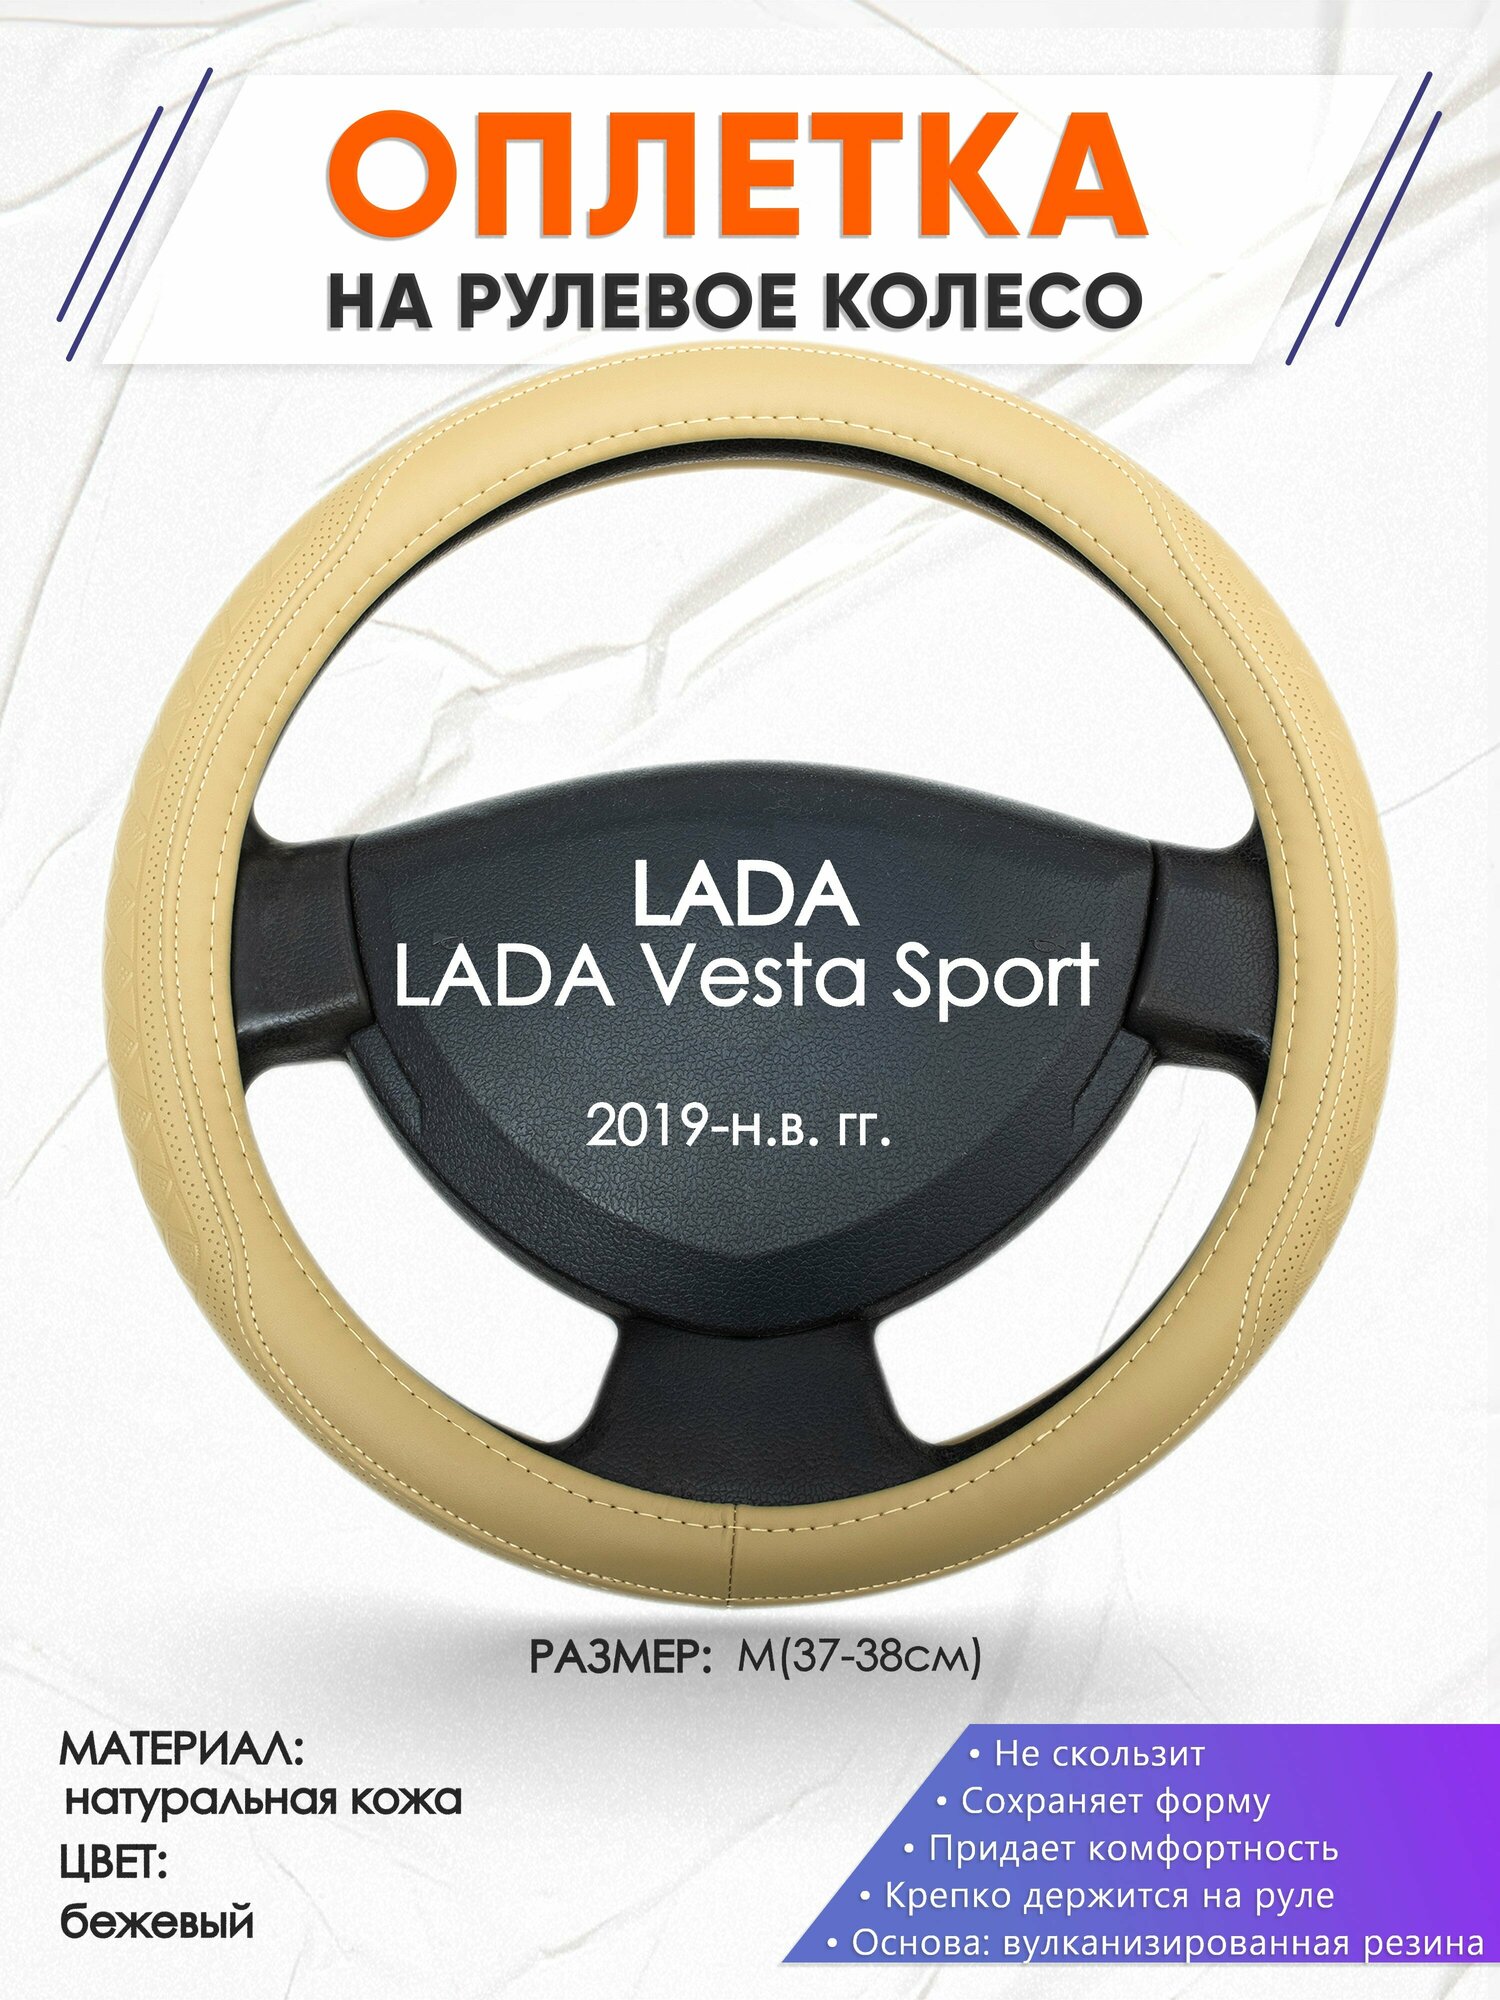 Оплетка наруль для LADA Vesta Sport(Лада Веста спорт) 2019-н. в. годов выпуска, размер M(37-38см), Натуральная кожа 91